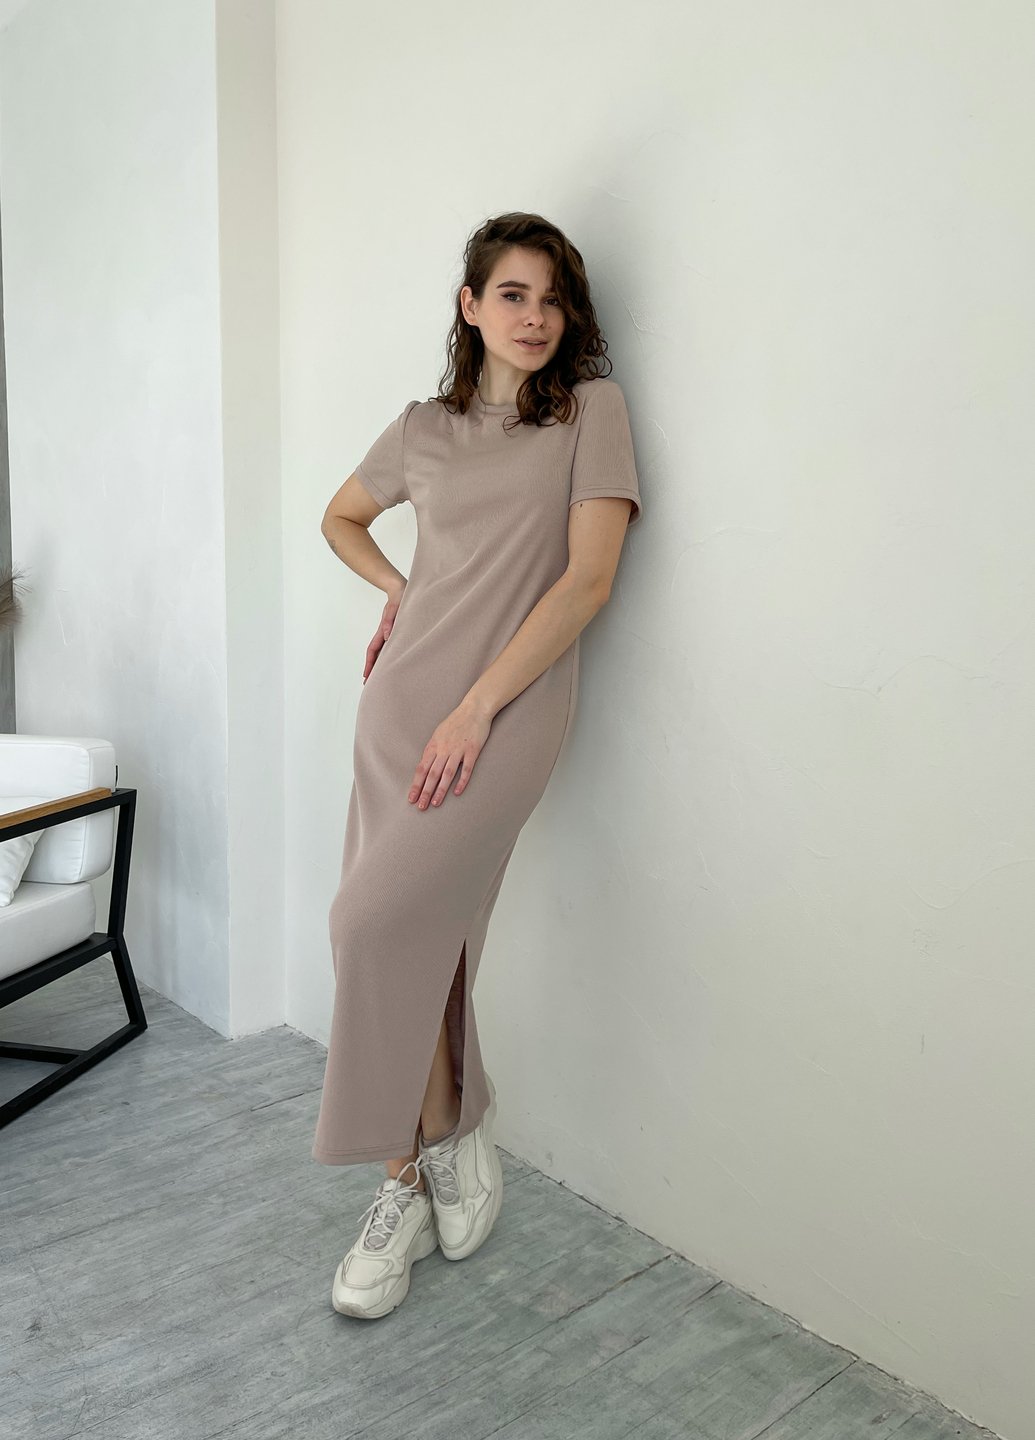 Купить Длинное платье женское в рубчик бежевое Merlini Кассо 700000123, размер XS-M (40-44) в интернет-магазине